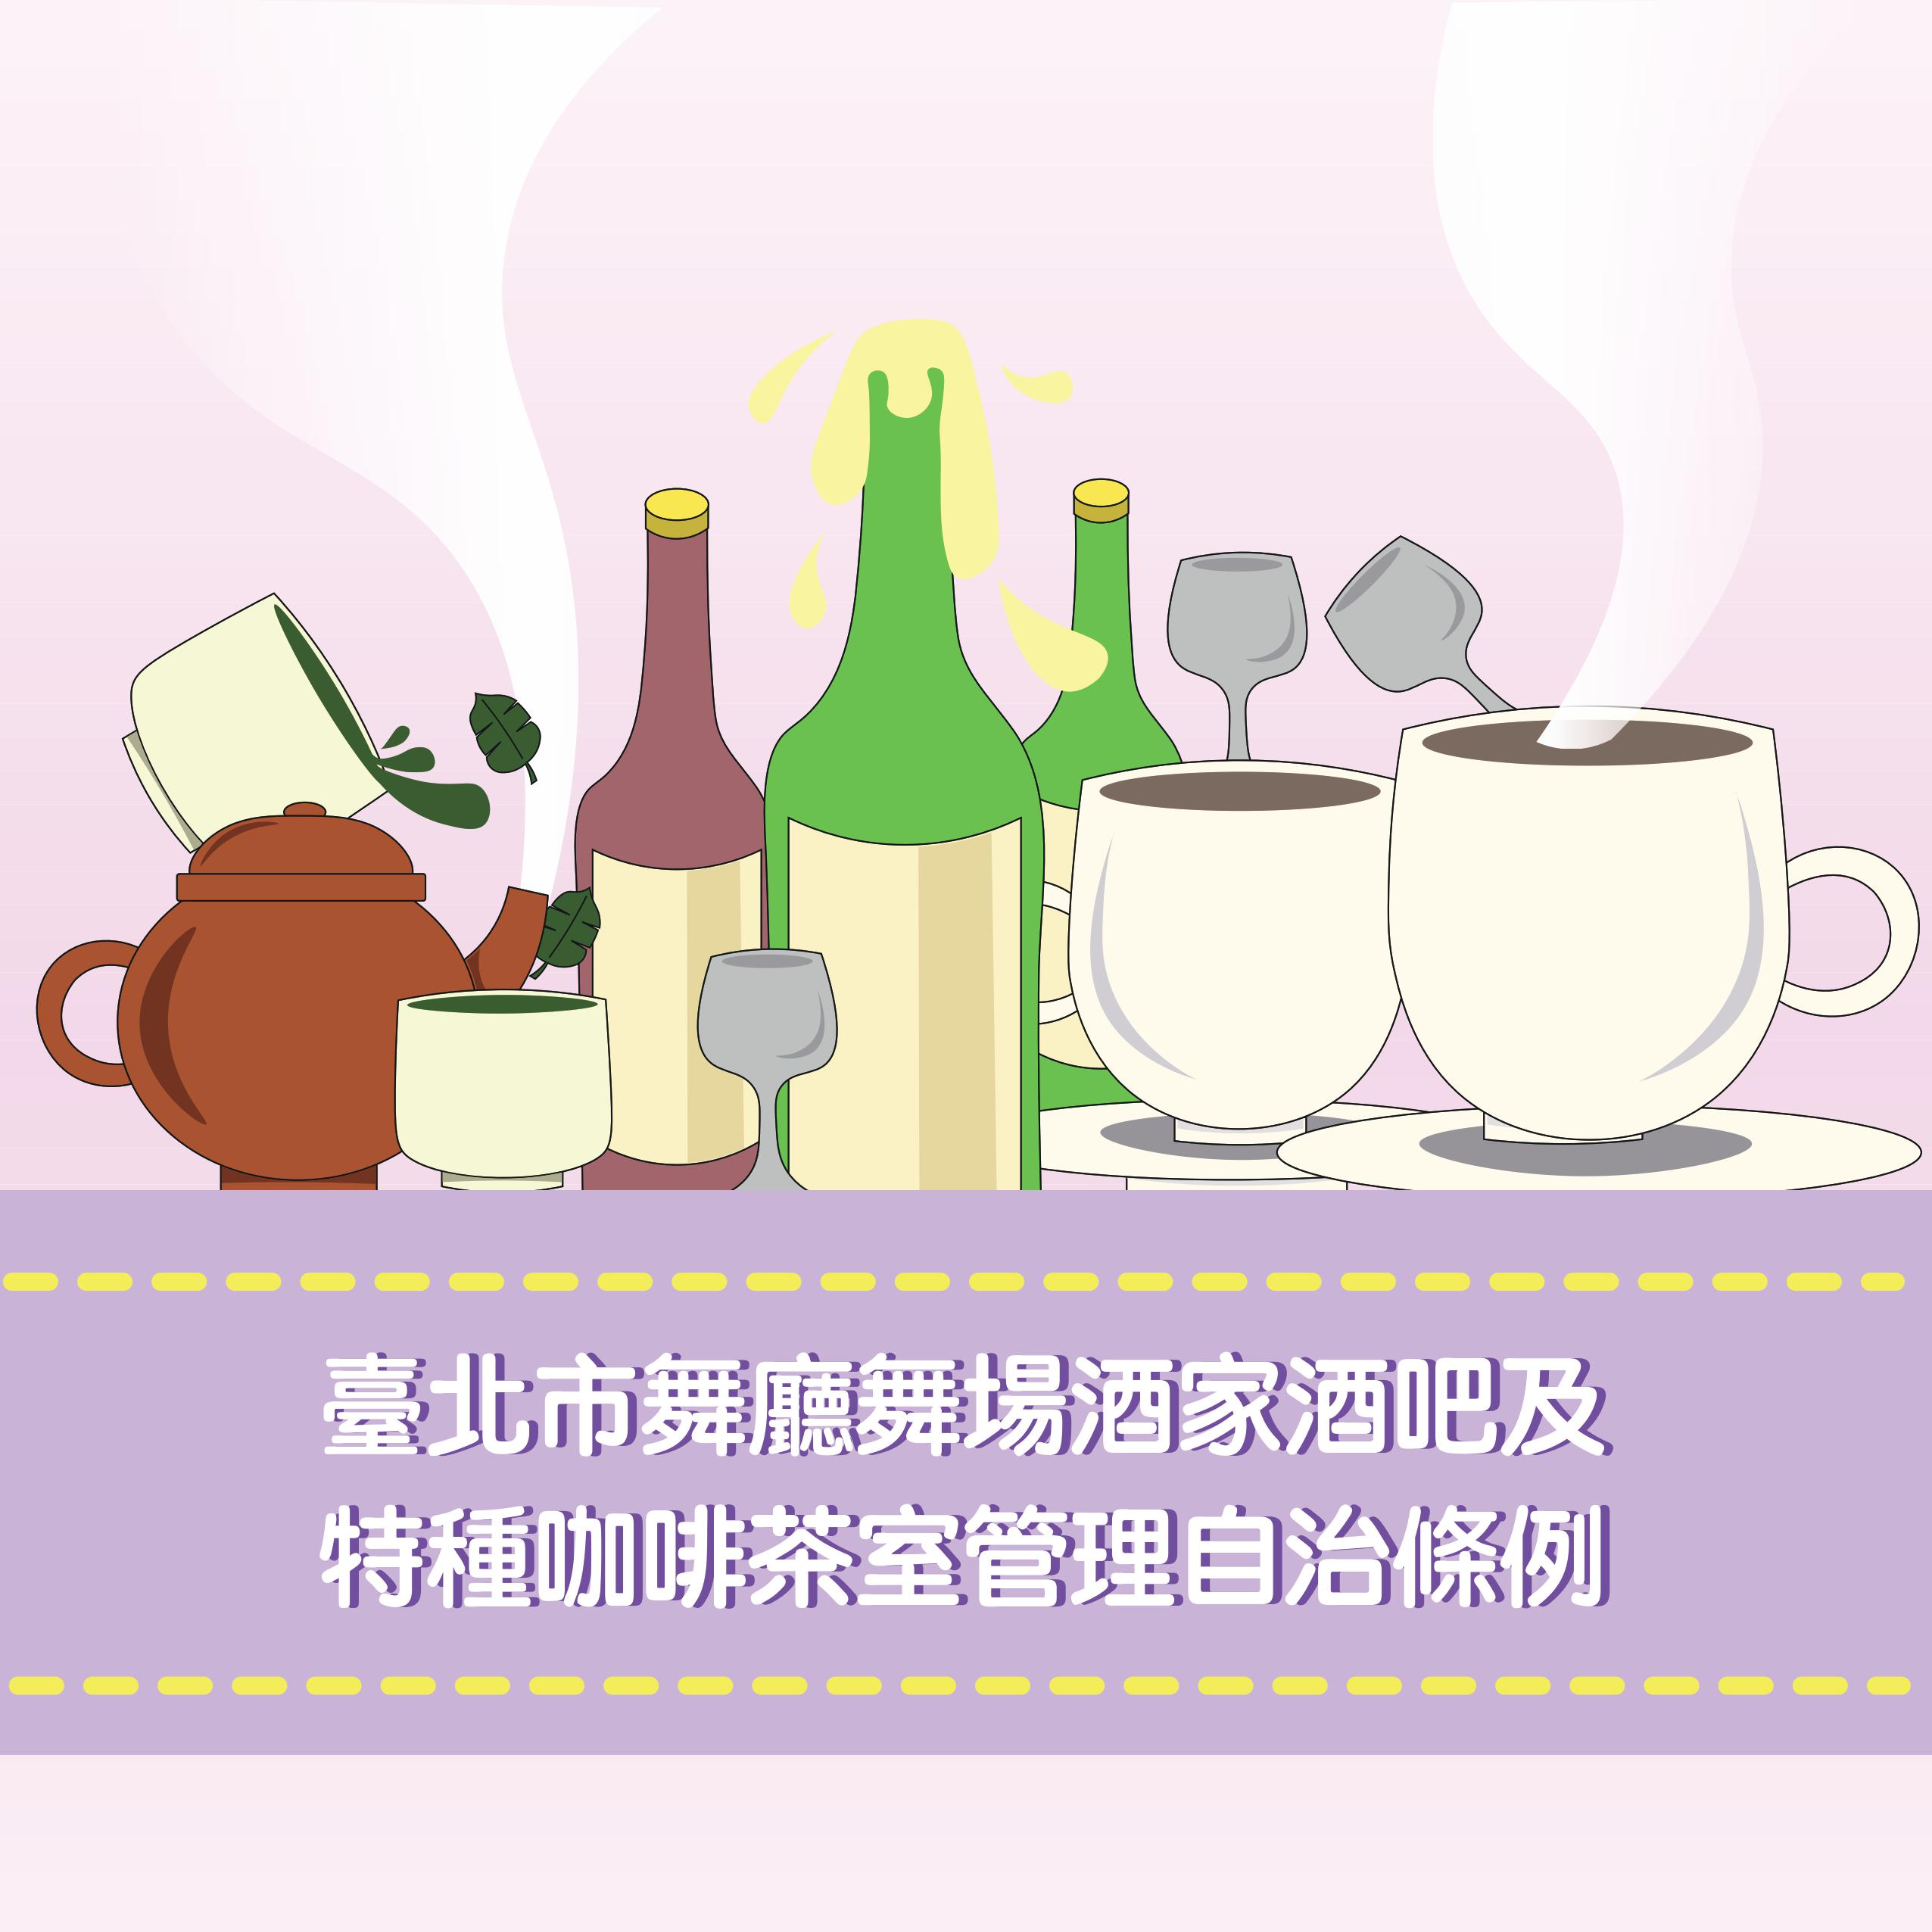 臺北市舞廳舞場酒家酒吧及特種咖啡茶室管理自治條例連結